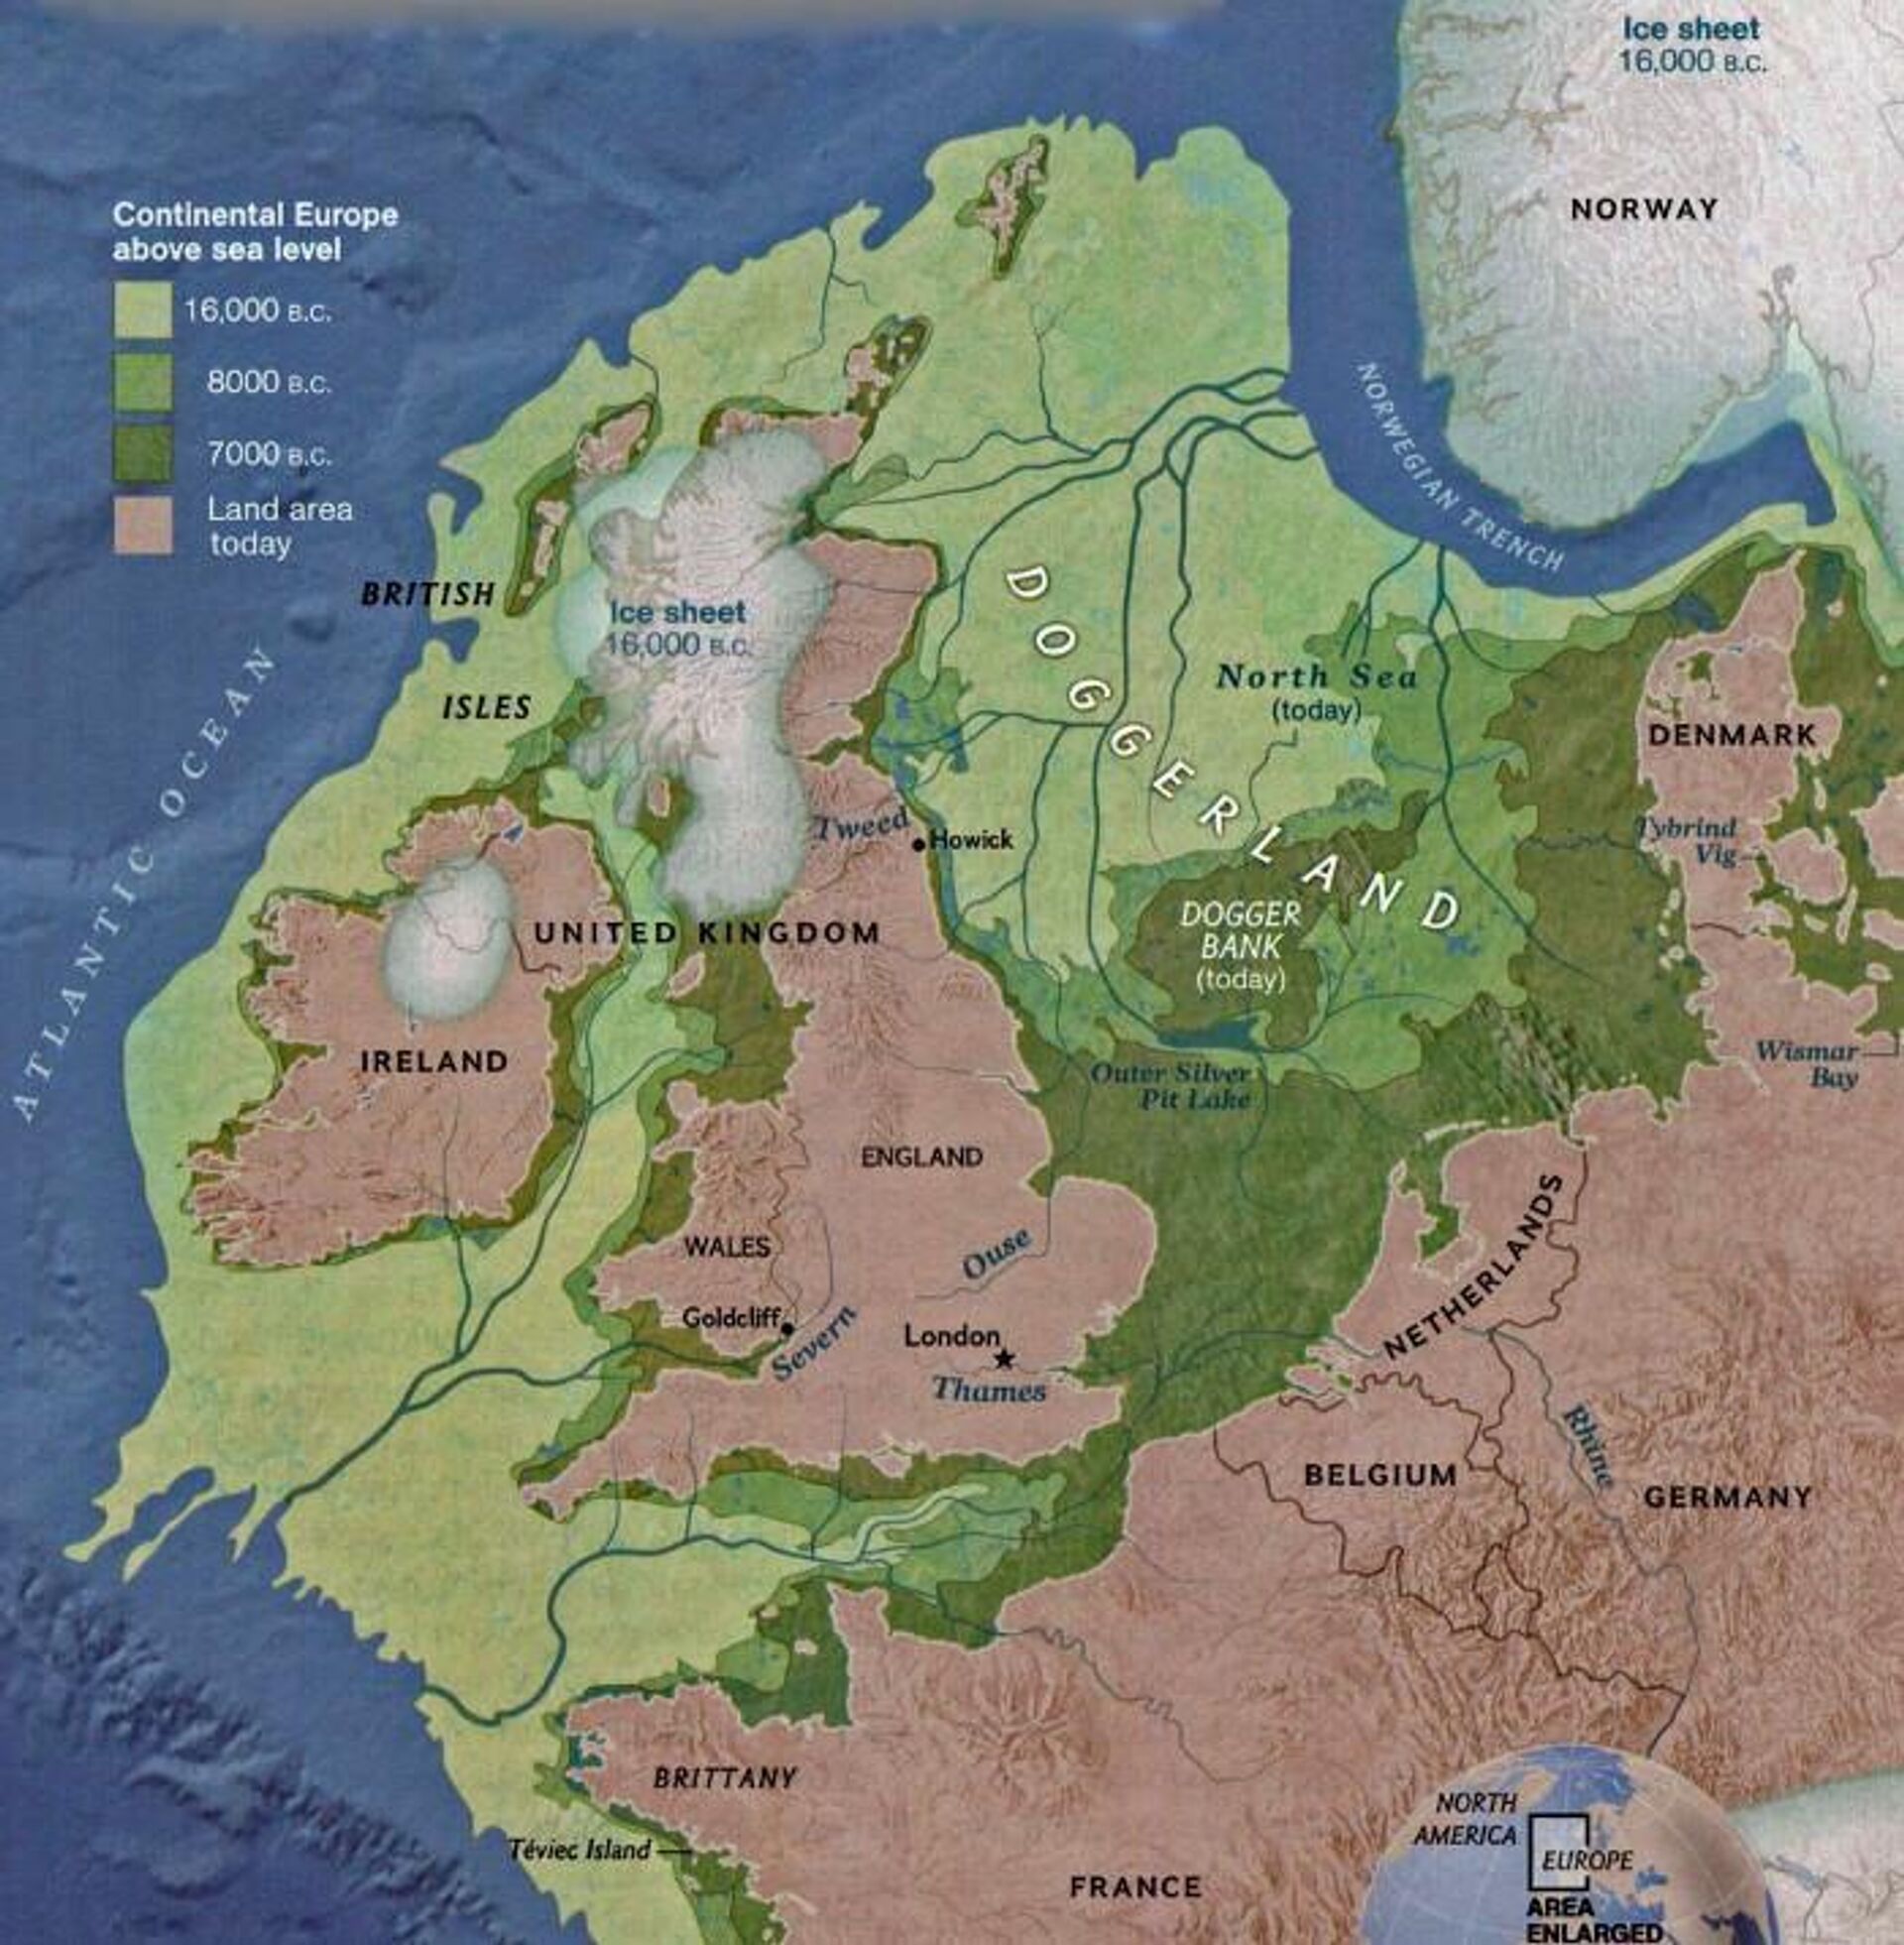 Доггерленд - территория, занимавшая южную часть Северного моря и соединявшая Британию с материковой Европой - РИА Новости, 1920, 11.01.2021